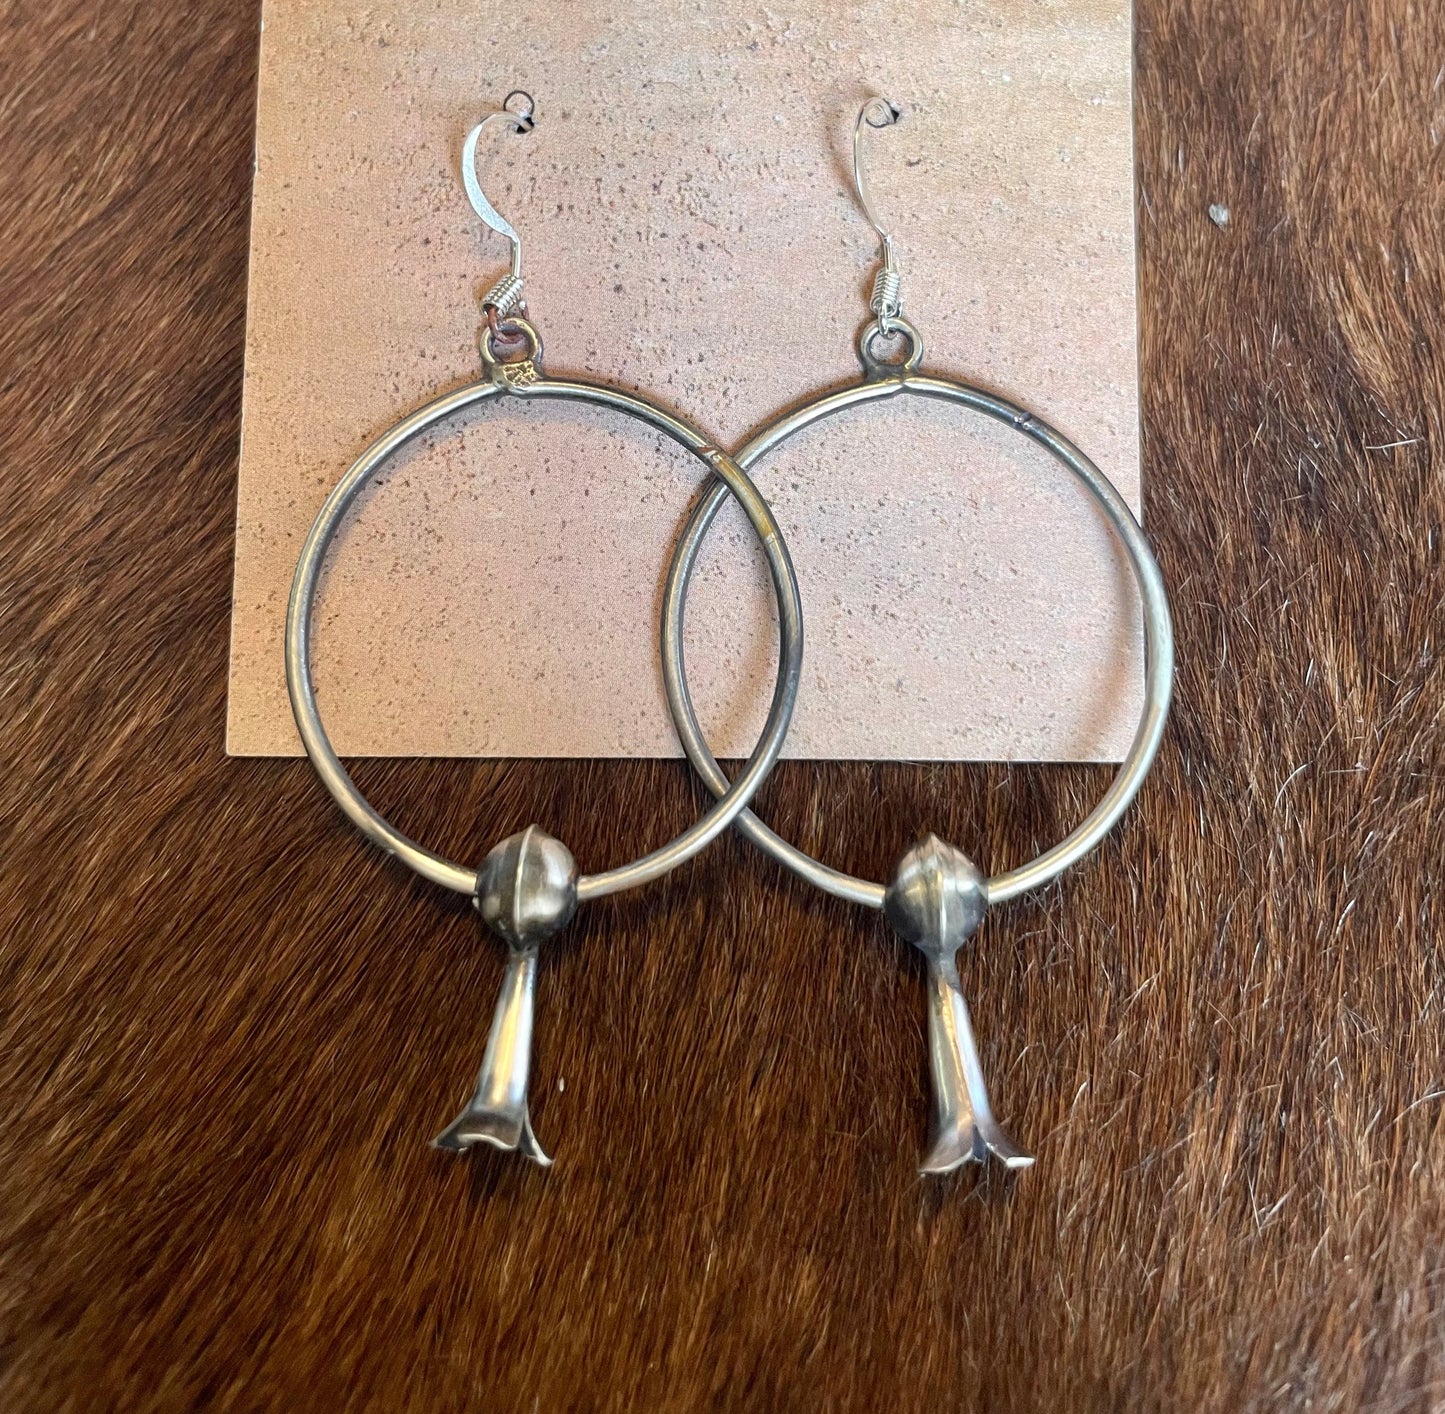 Navajo Sterling Silver Blossom Dangle Hoop Earrings